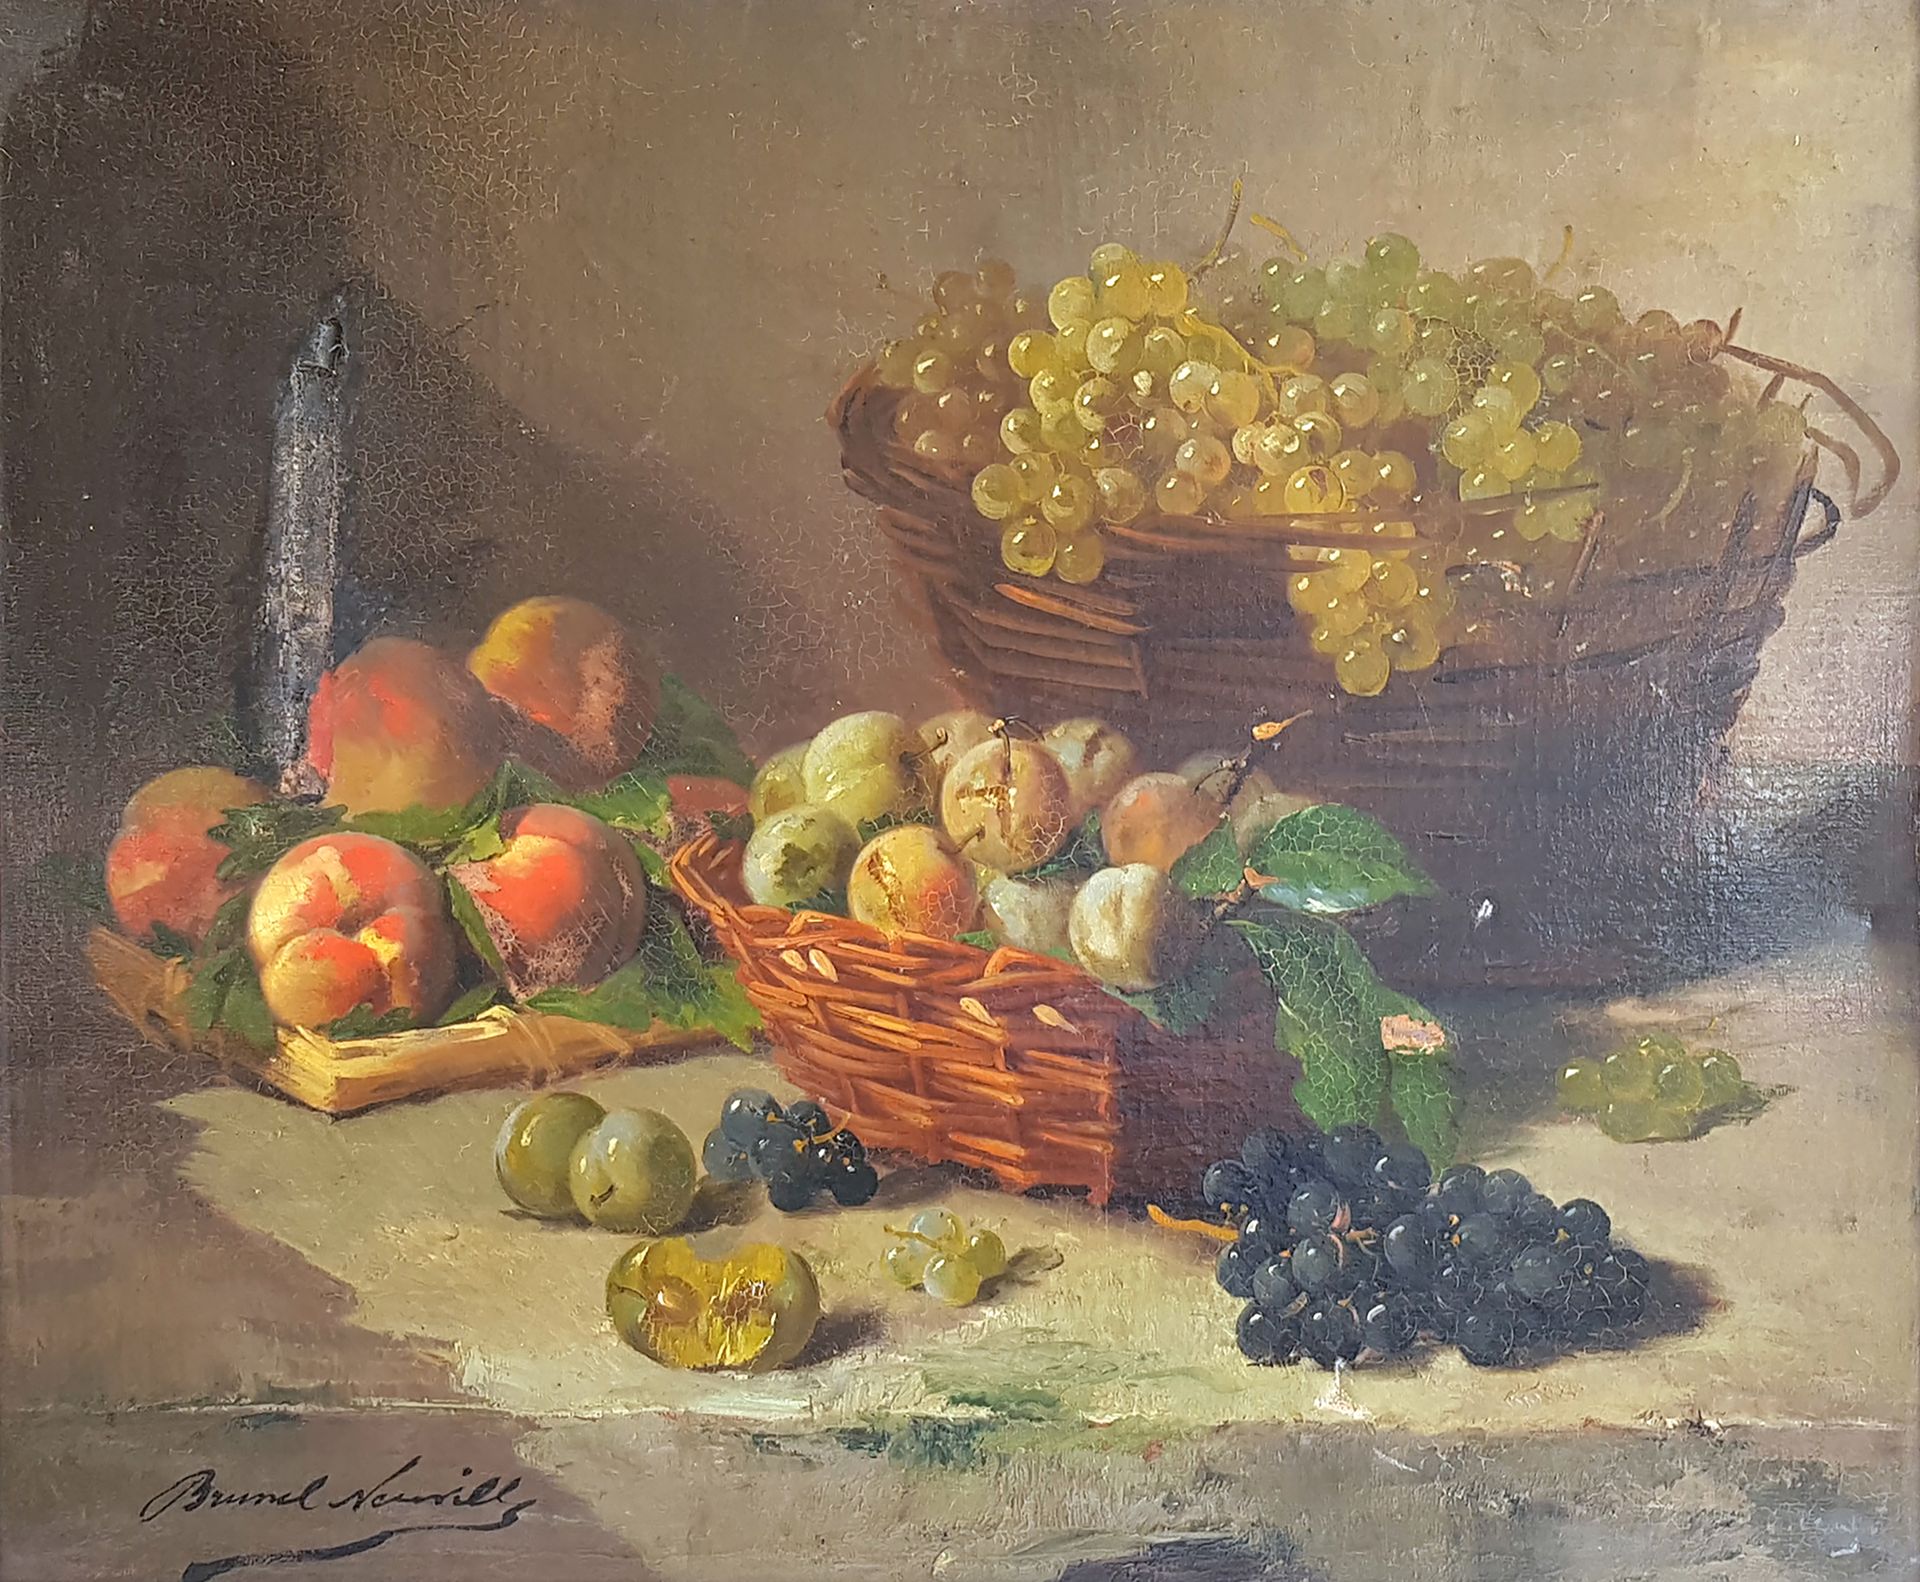 Null 阿尔弗雷德-布鲁内尔-德-纽维尔(1852-1941)

水果静物

签名的布面油画

54 x 65 厘米

有框，事故和修复